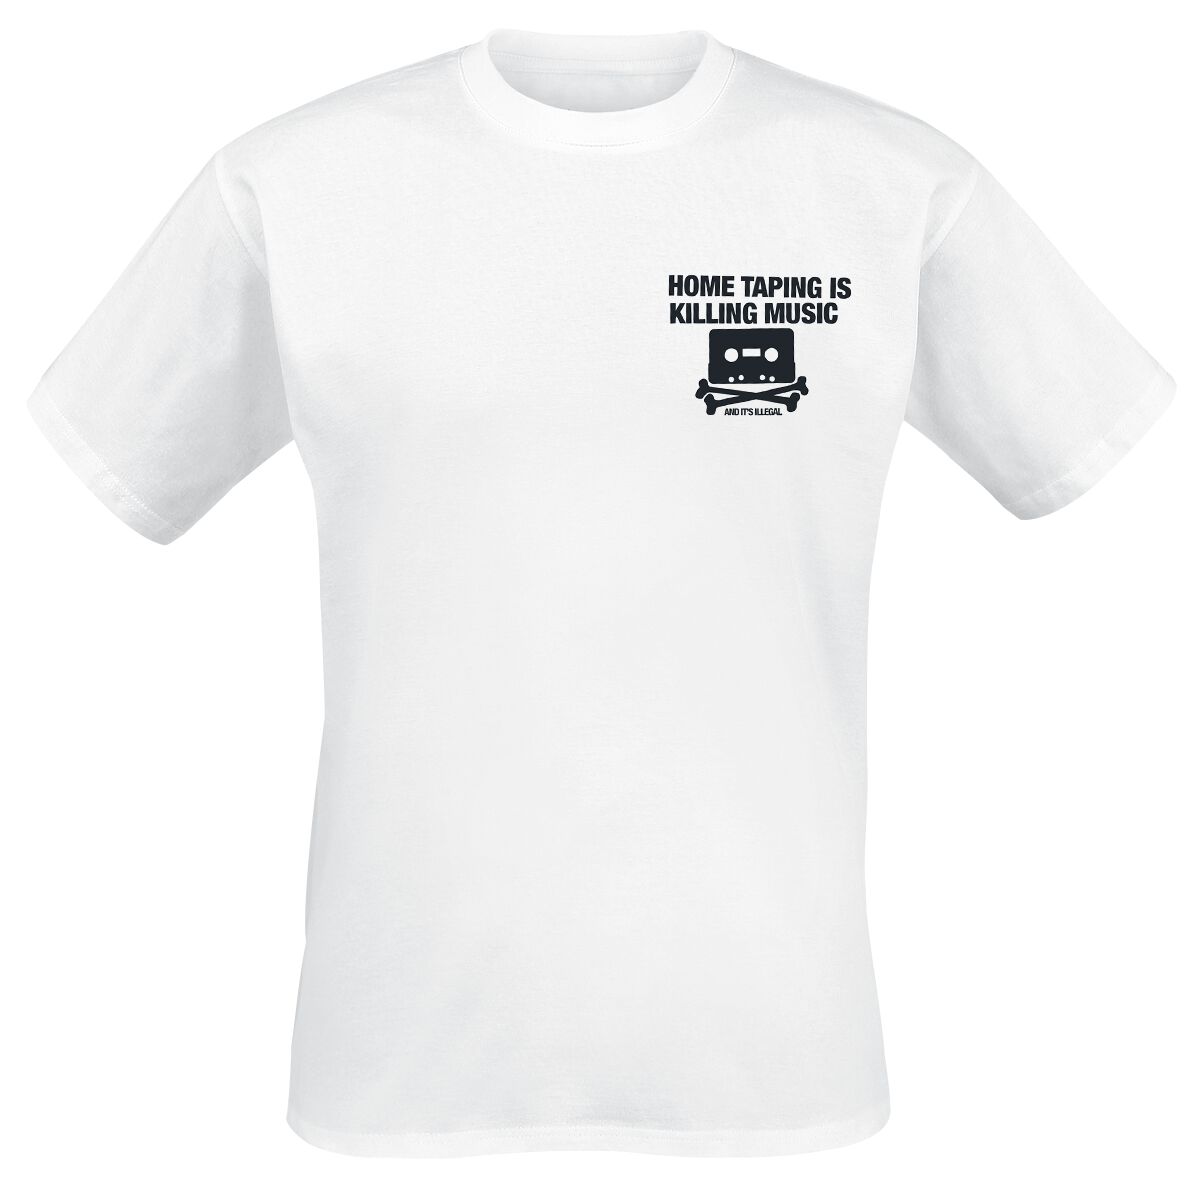 Parental Advisory T-Shirt - Home Taping - S bis XXL - für Männer - Größe S - weiß  - Lizenziertes Merchandise!